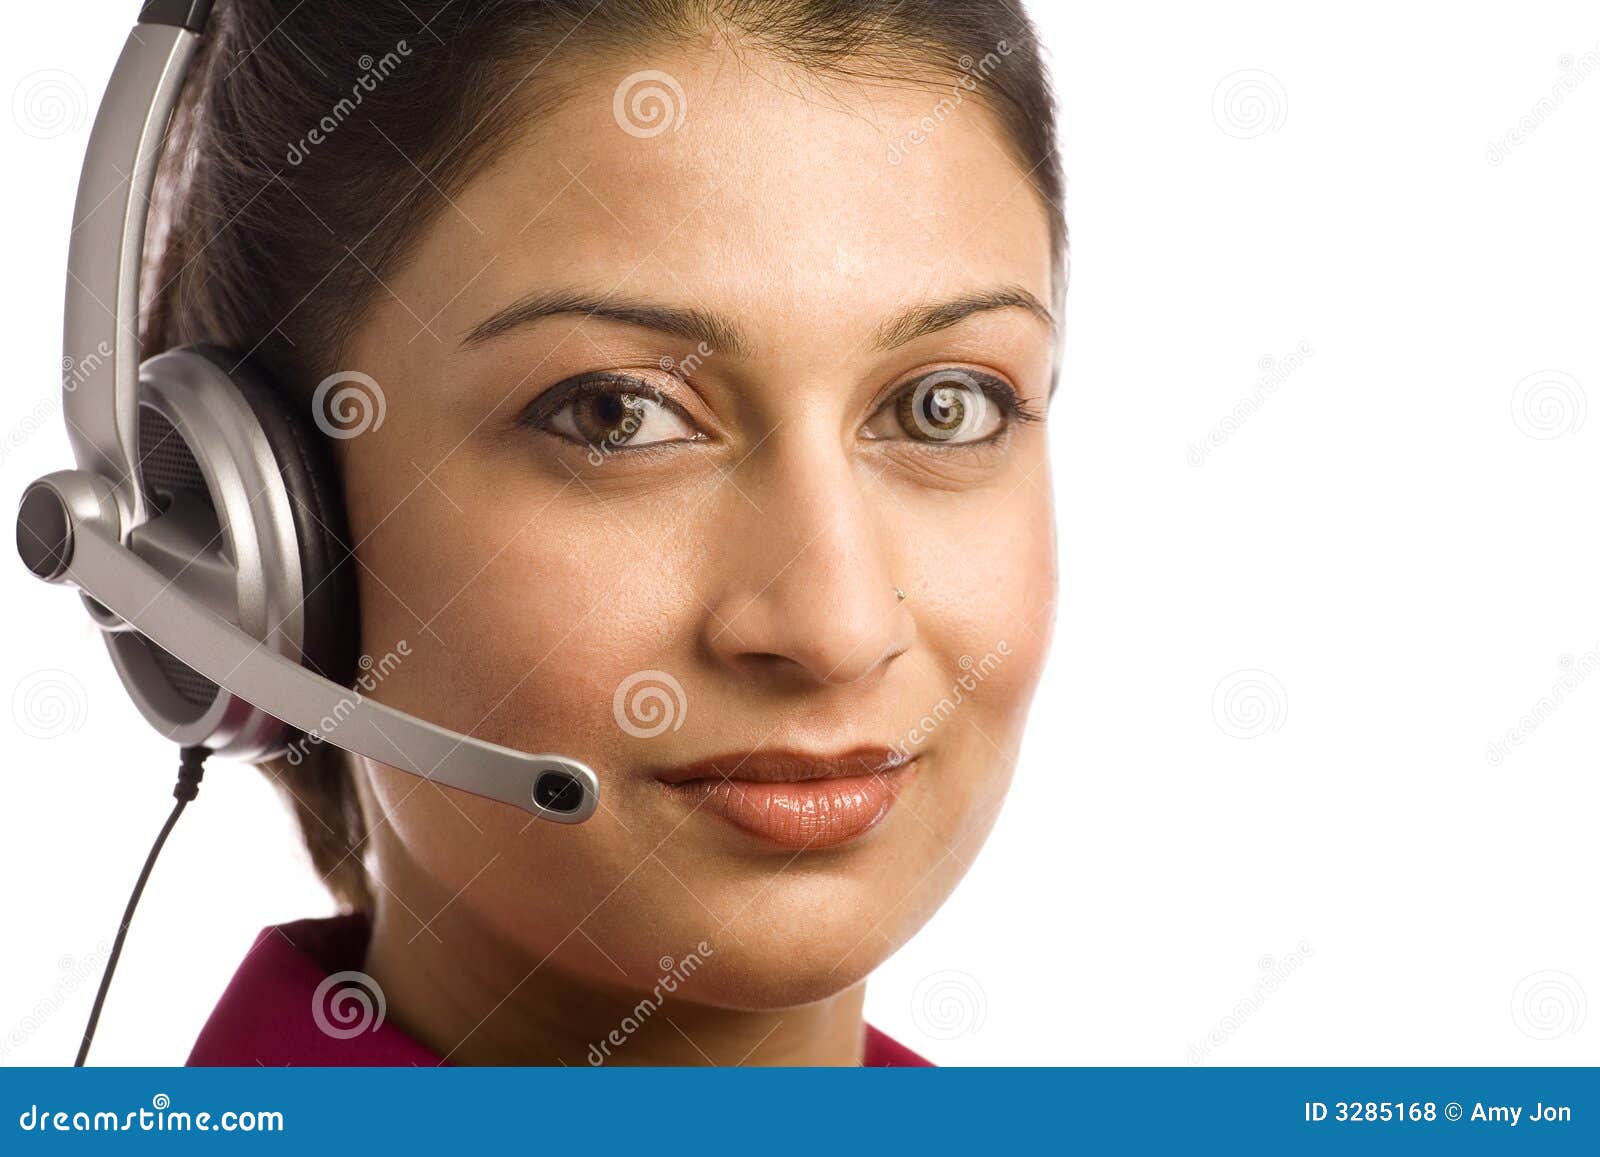 耳机印第安佩带的妇女. 关心客户友好耳机印第安有代表性佩带